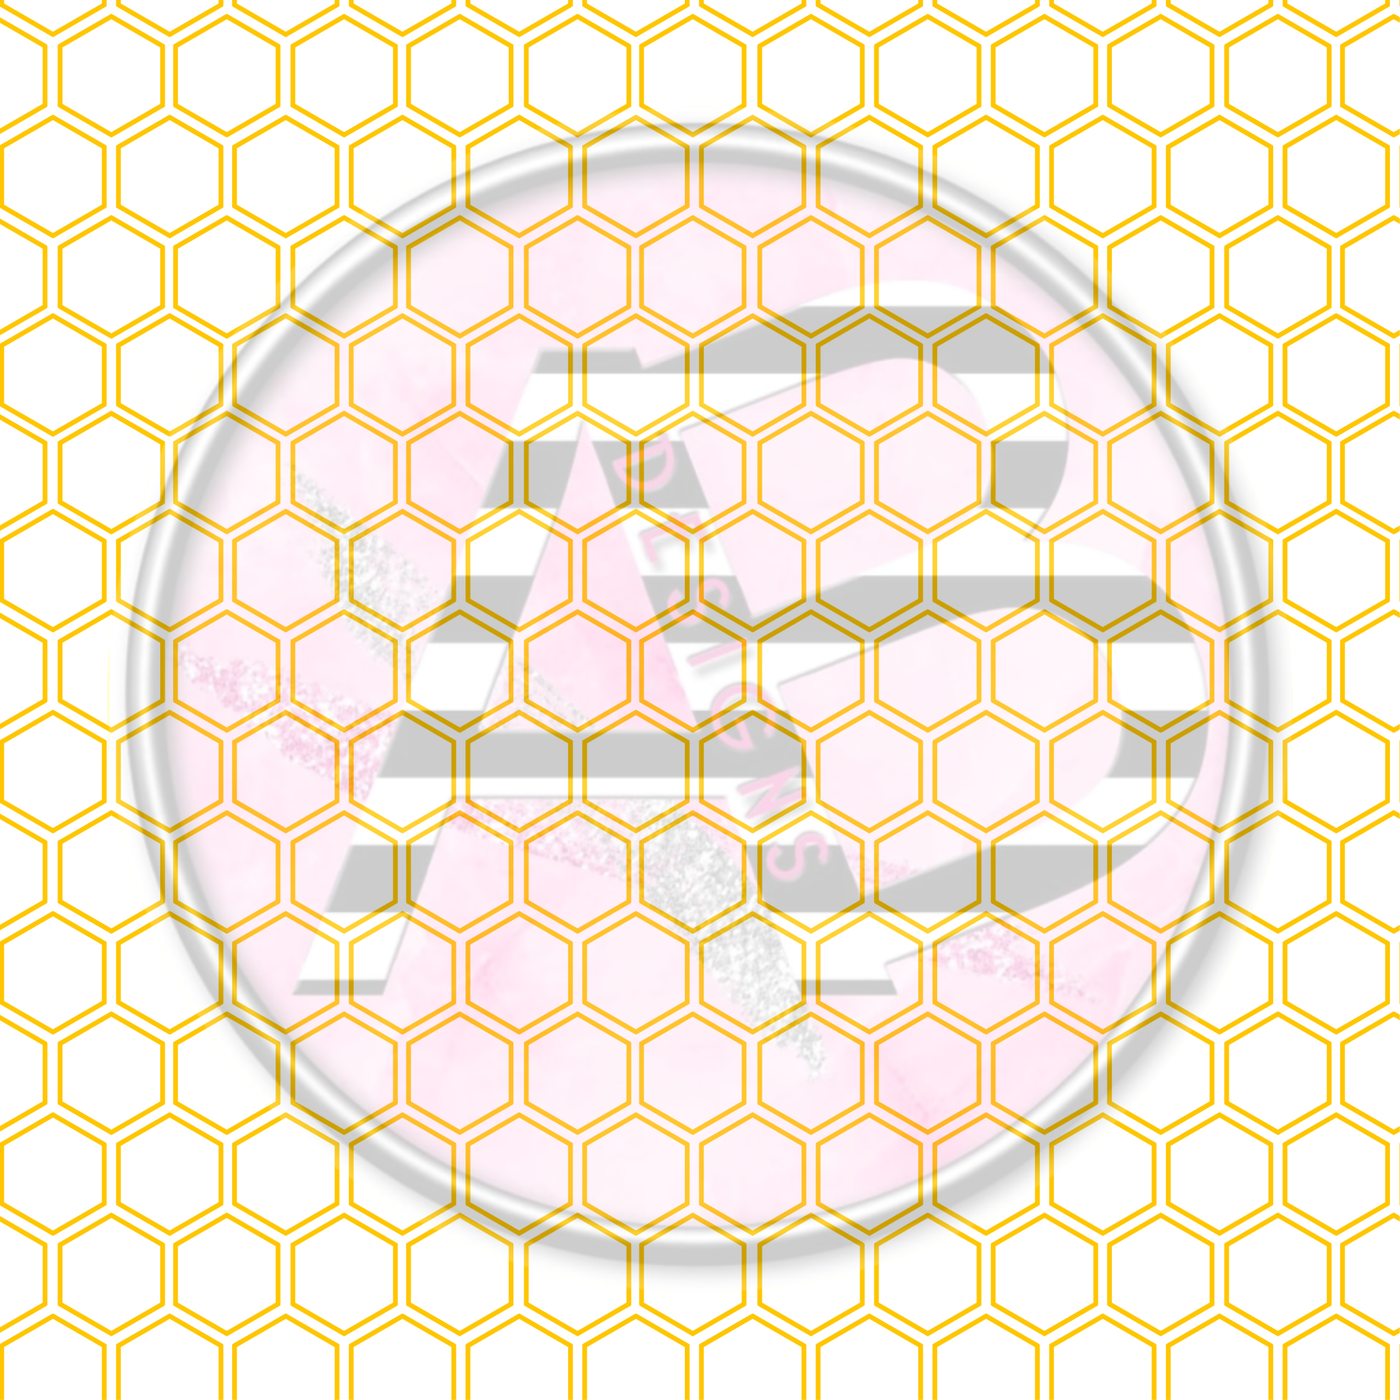 Adhesive Patterned Vinyl - Honey Bee 12